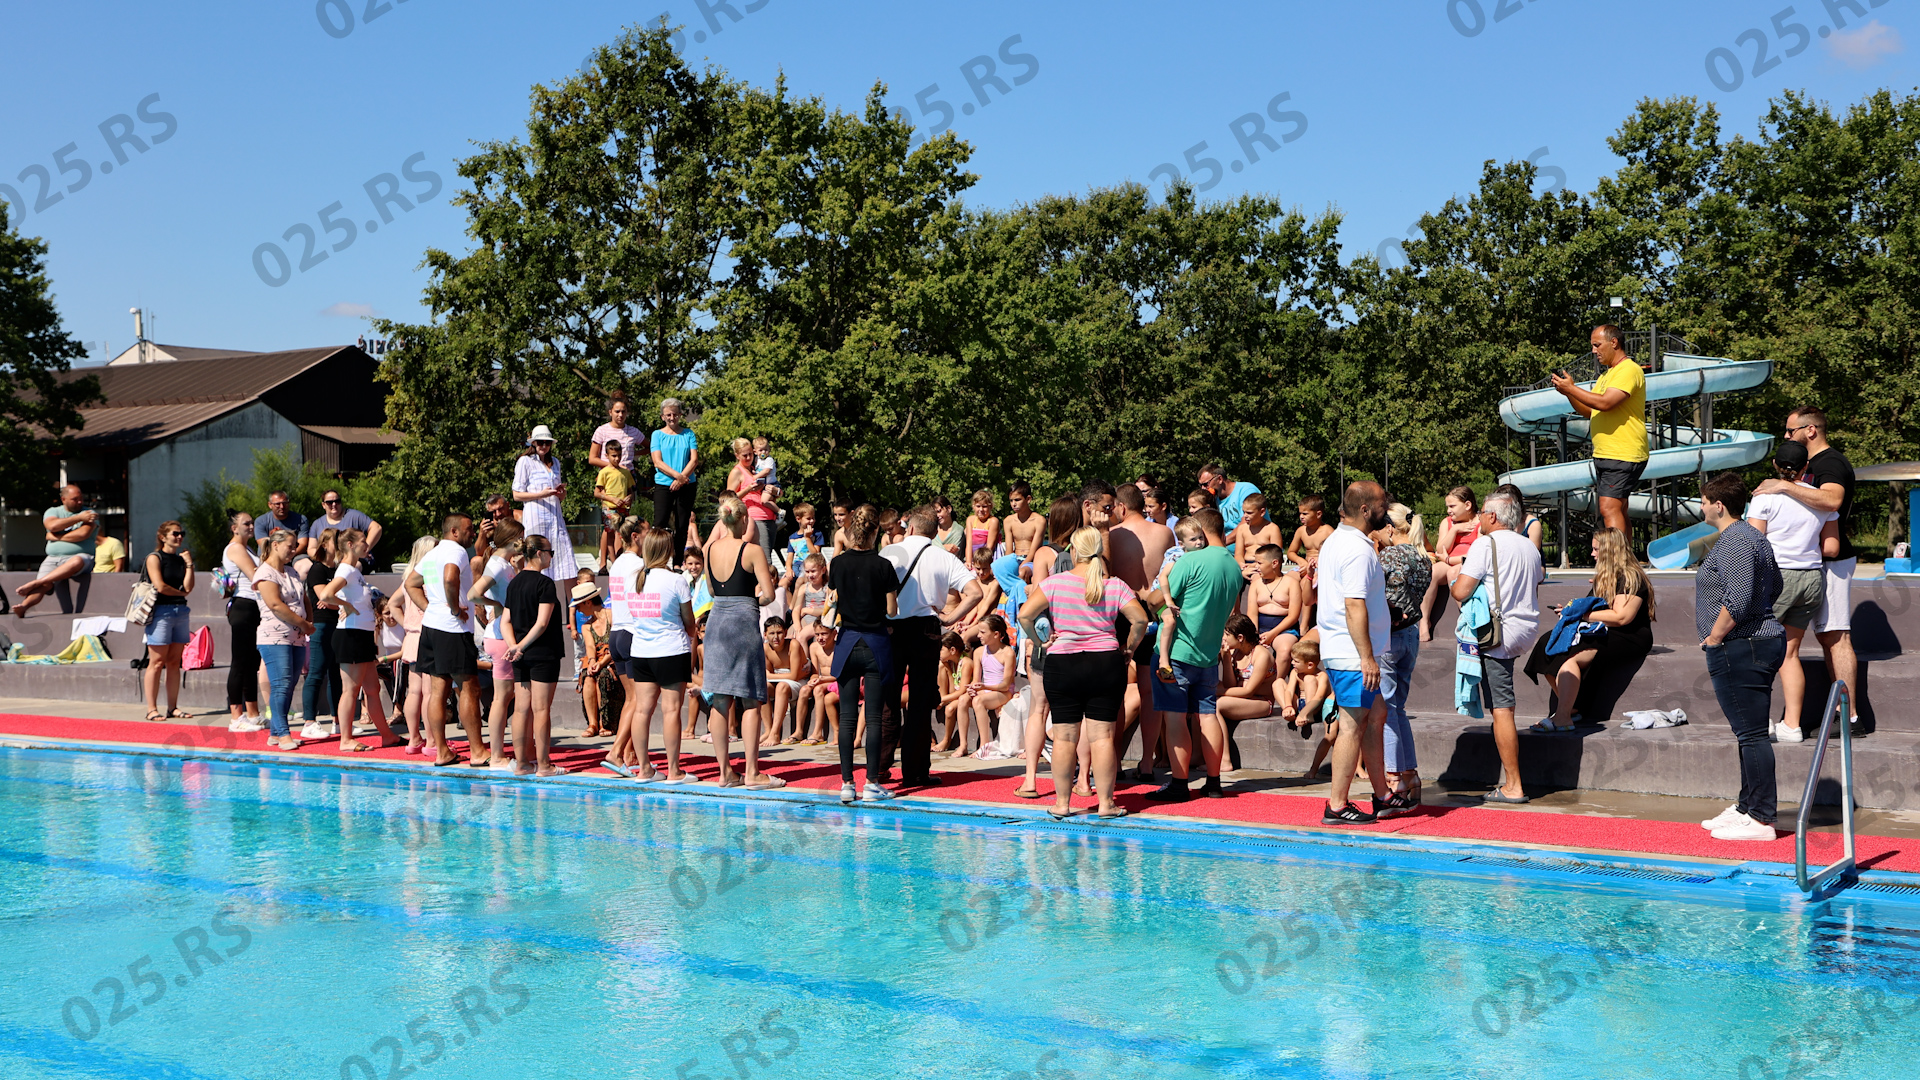 škola plivanja na bazenima “Junaković”-apatin